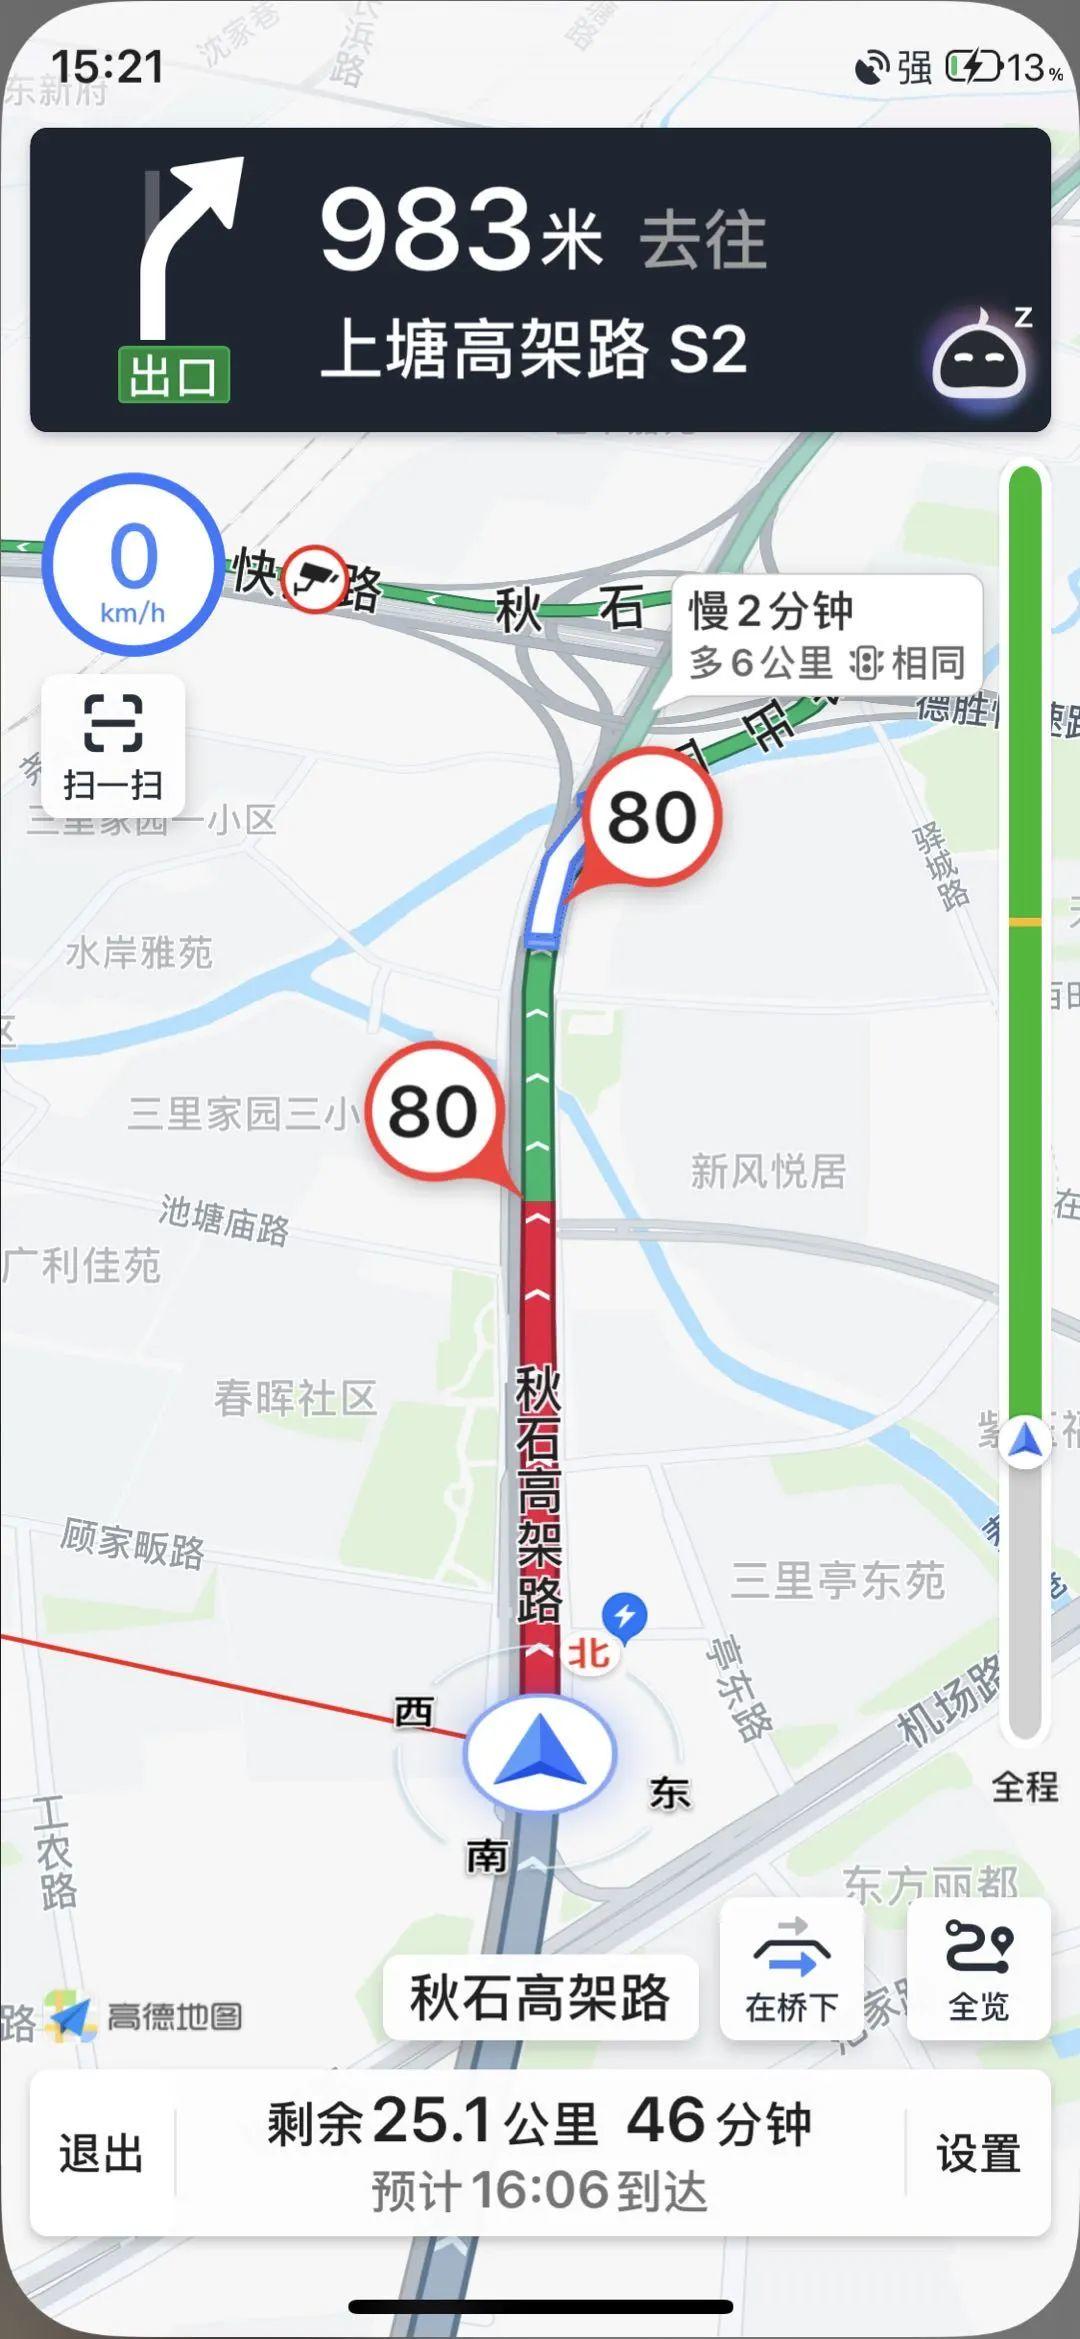 2019年度全国百城交通拥堵提排名TOP10： 1、重庆 2、北-今日头条